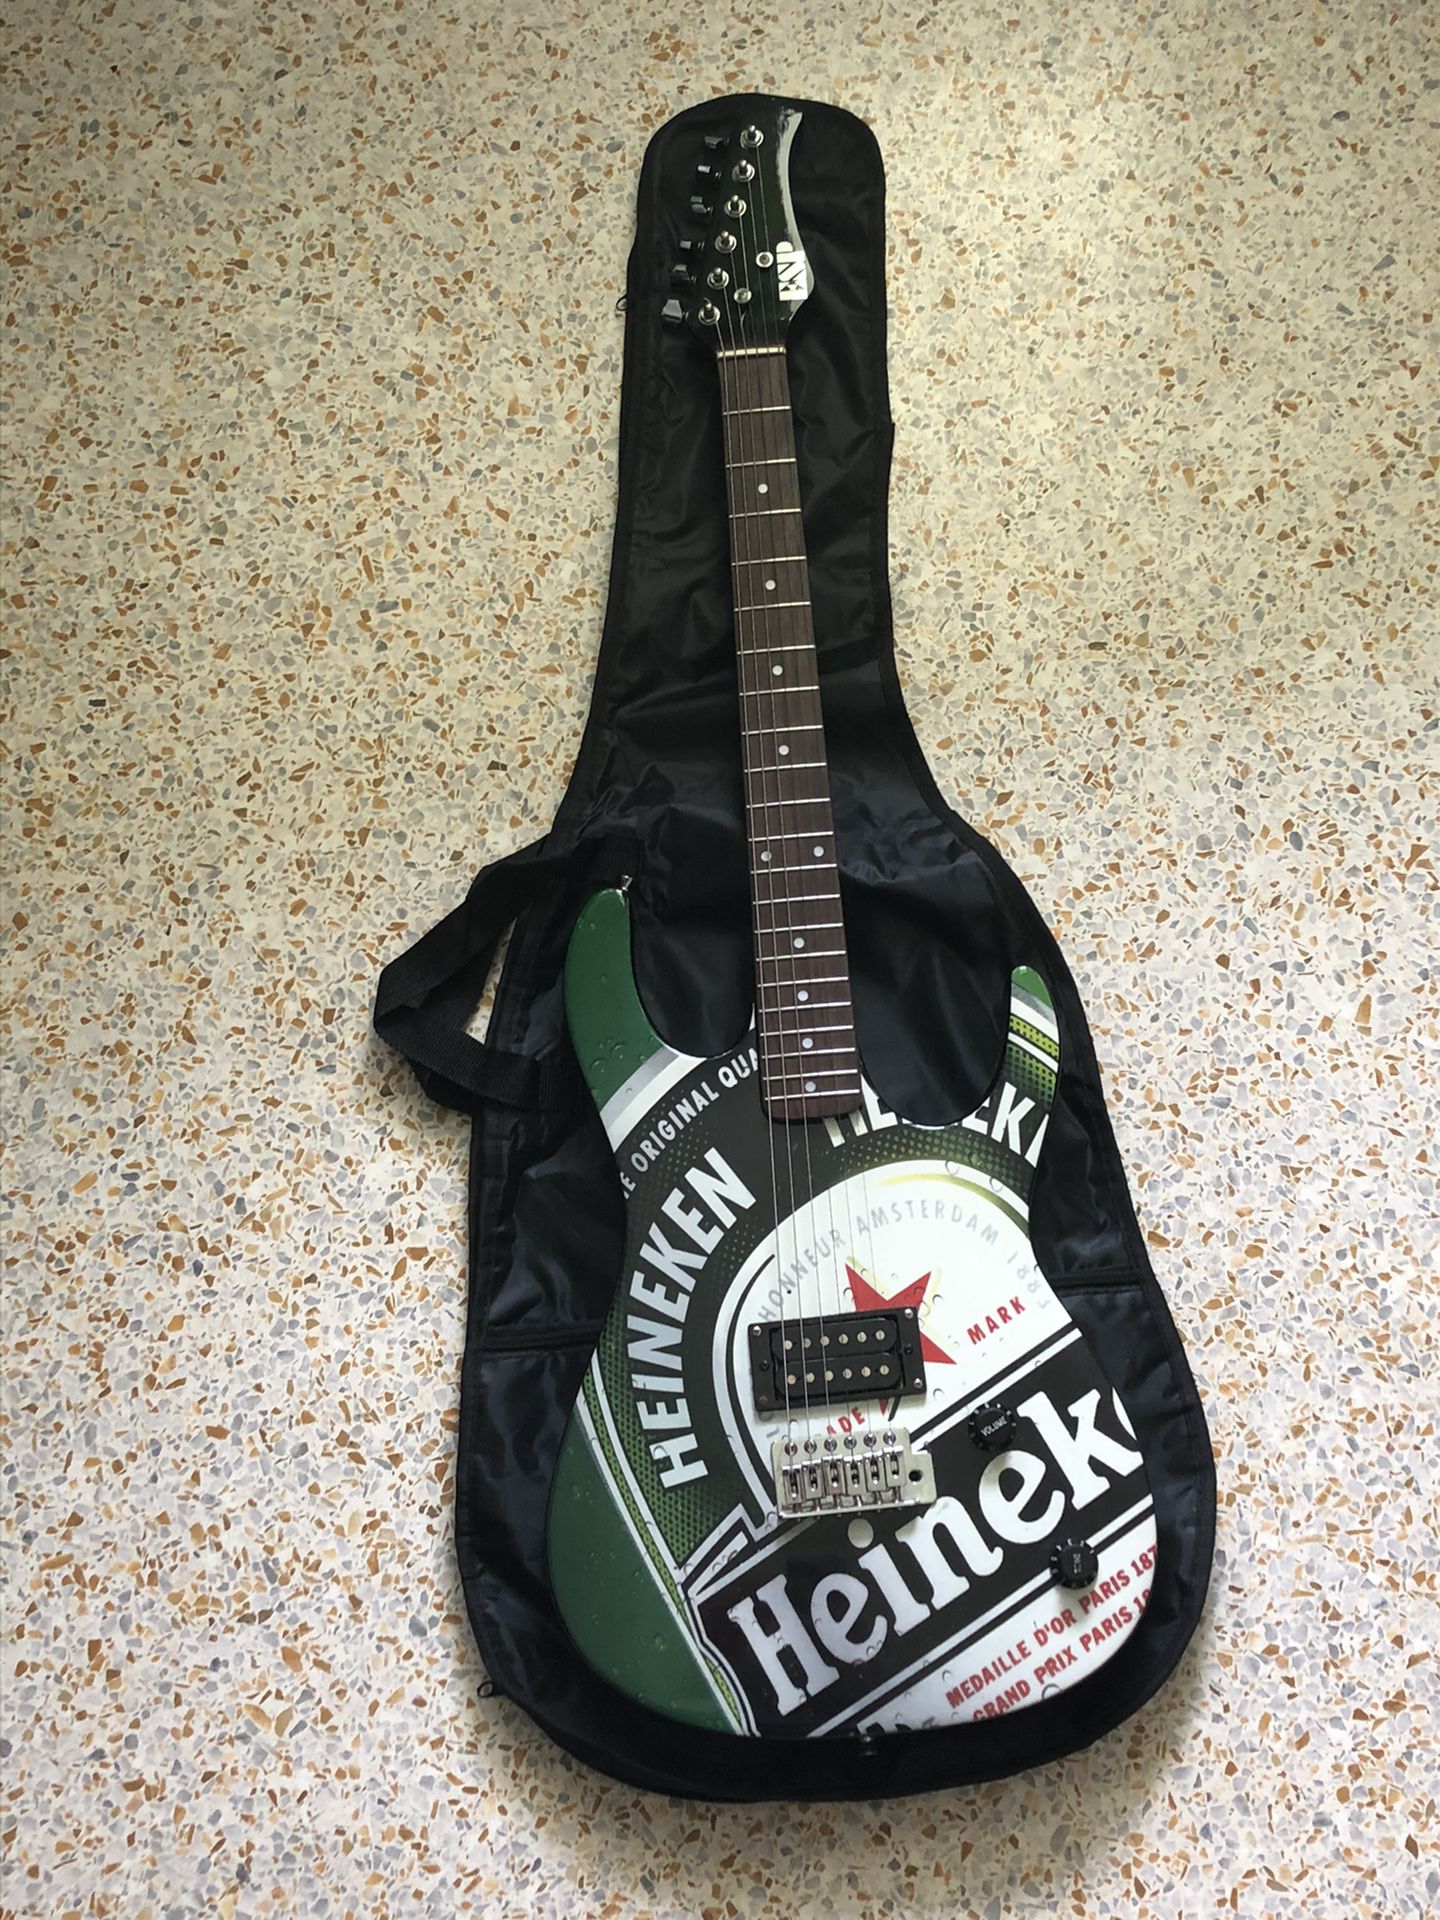 Heineken Limited addition electric guitar